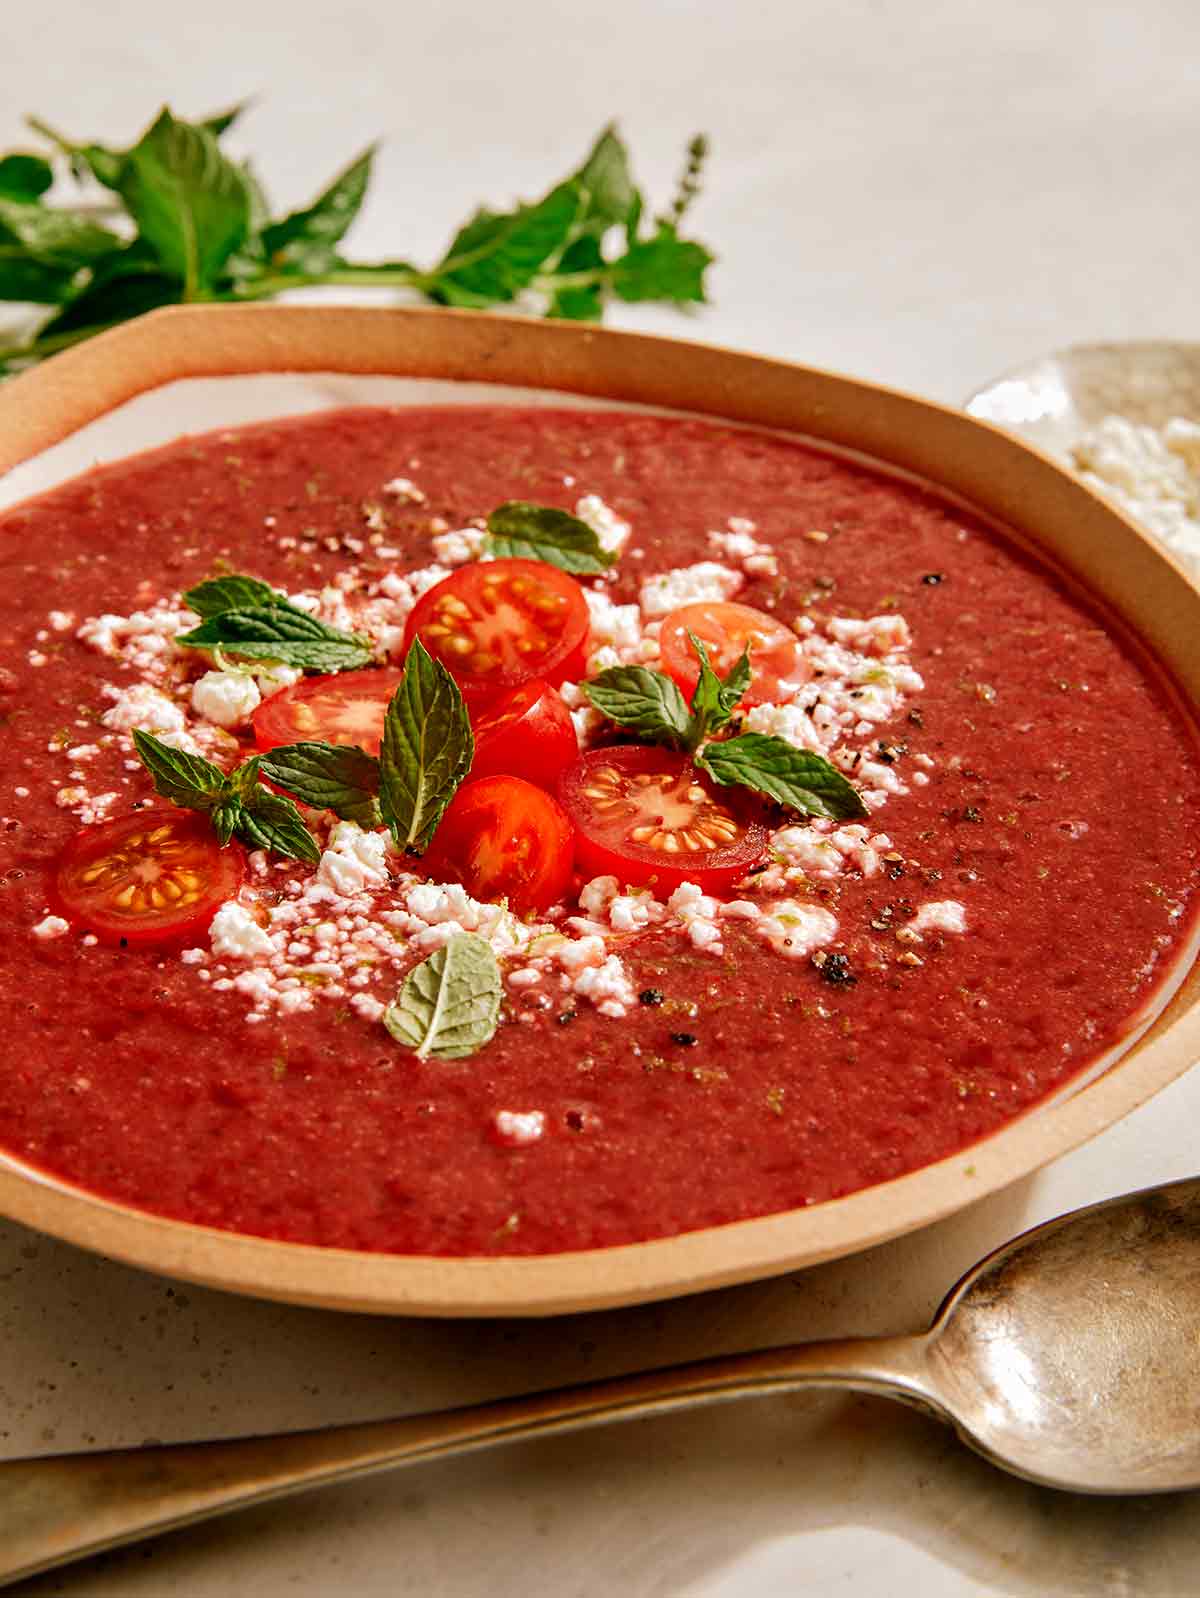 Strawberry and tomato gazpacho recipe in a bowl. 